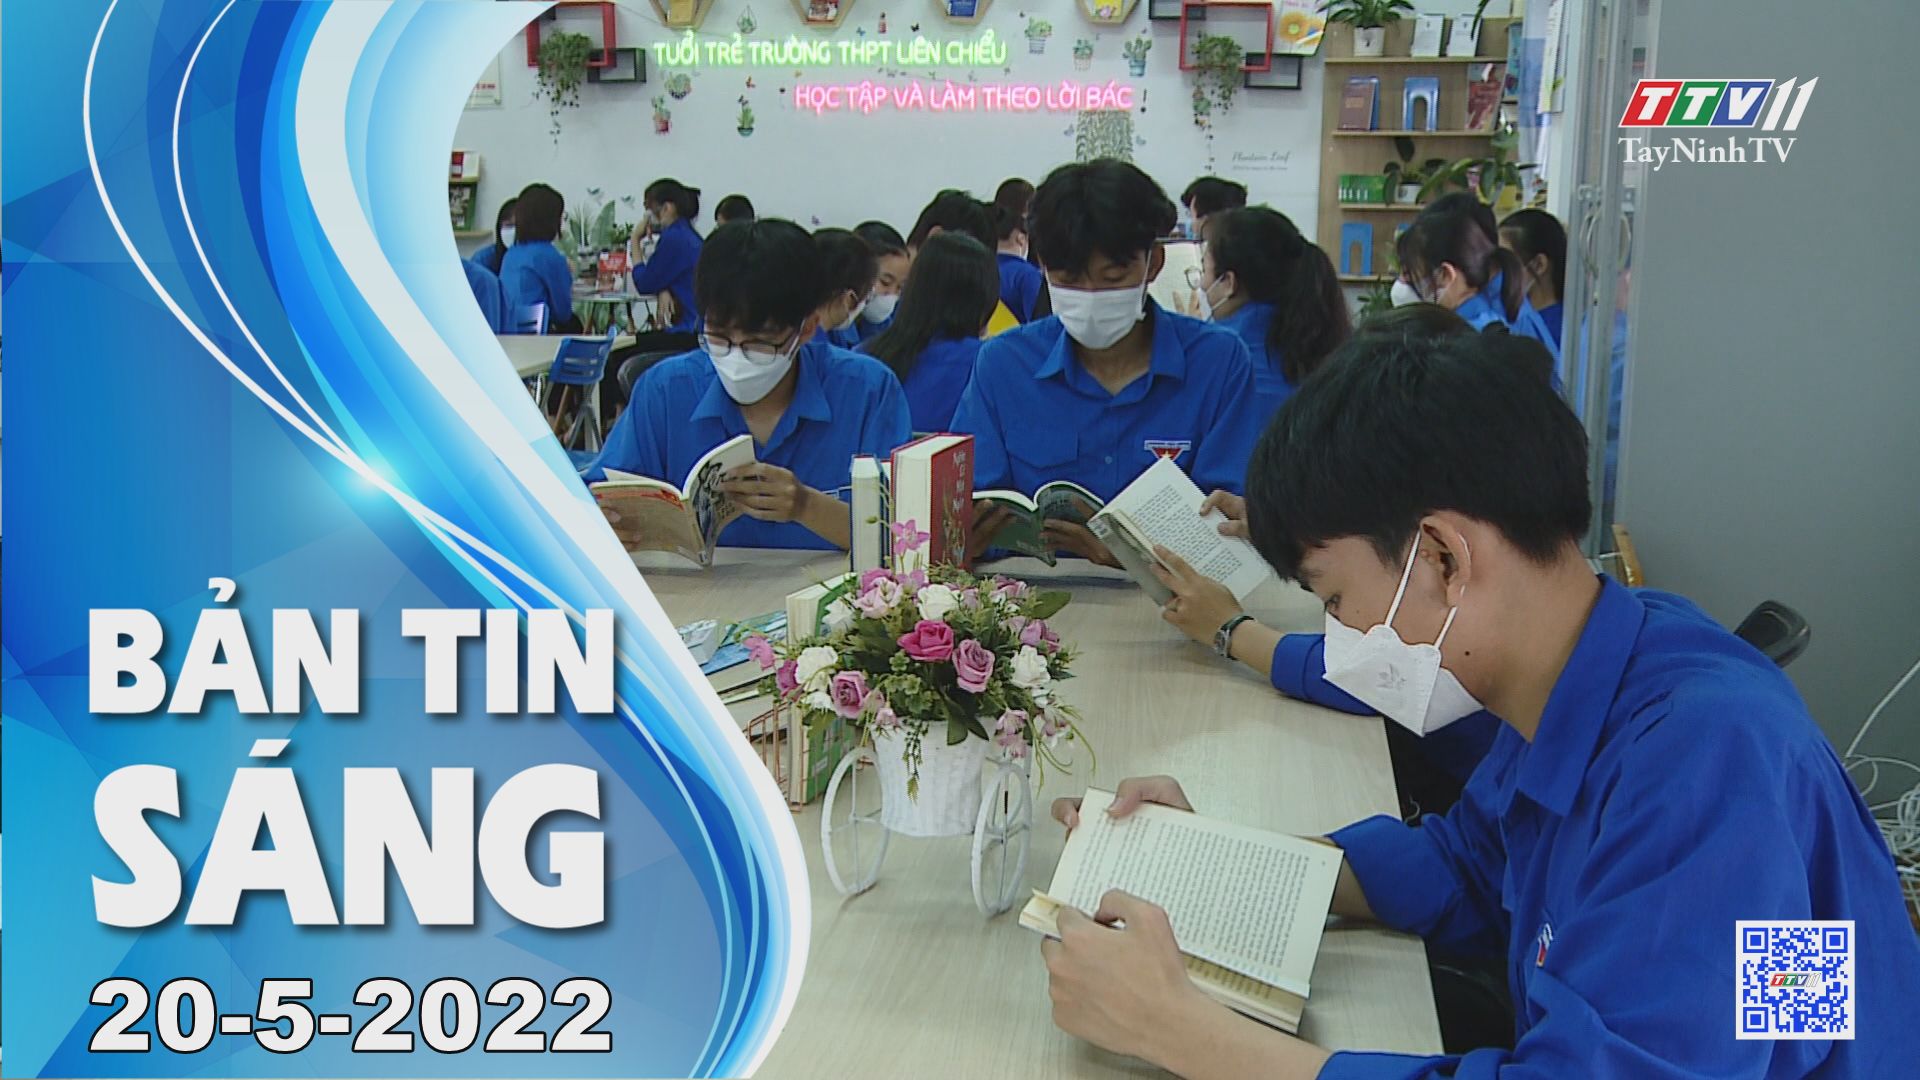 Bản tin sáng 20-5-2022 | Tin tức hôm nay | TayNinhTV